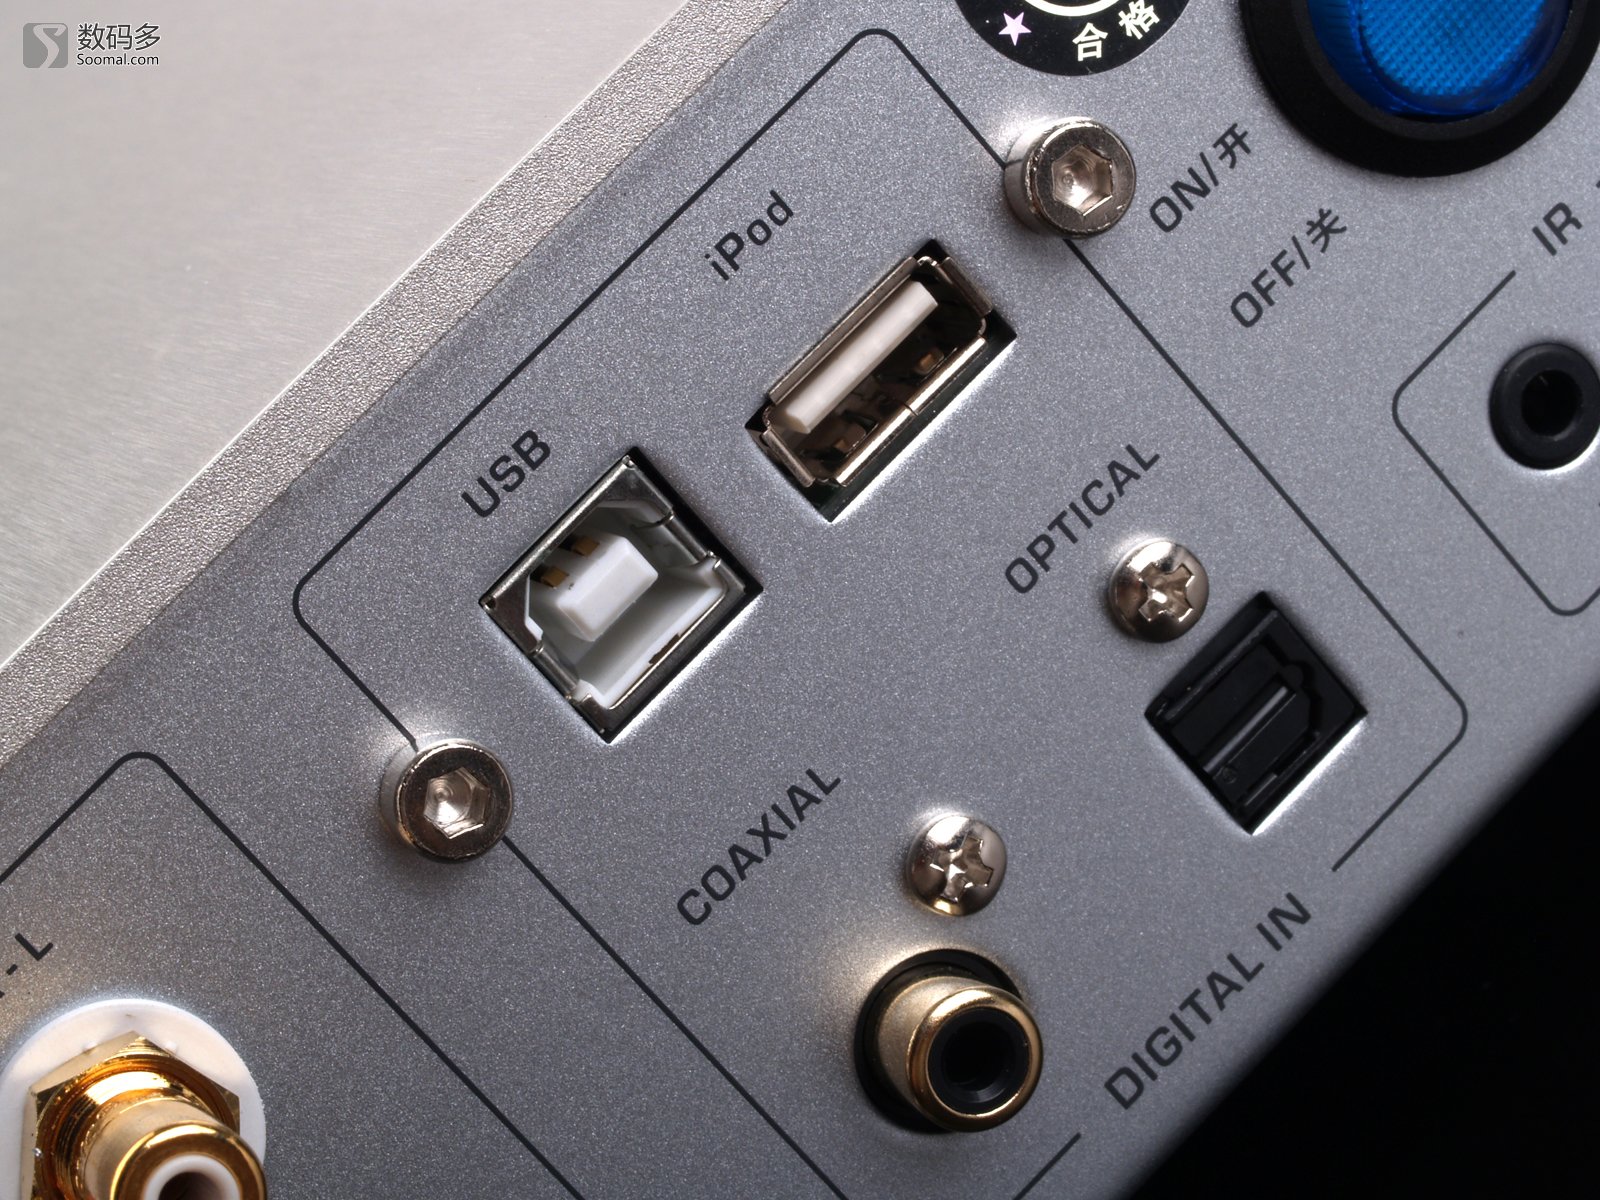 1 外置立体声解码器-usb,同轴和光纤接口 图片说明